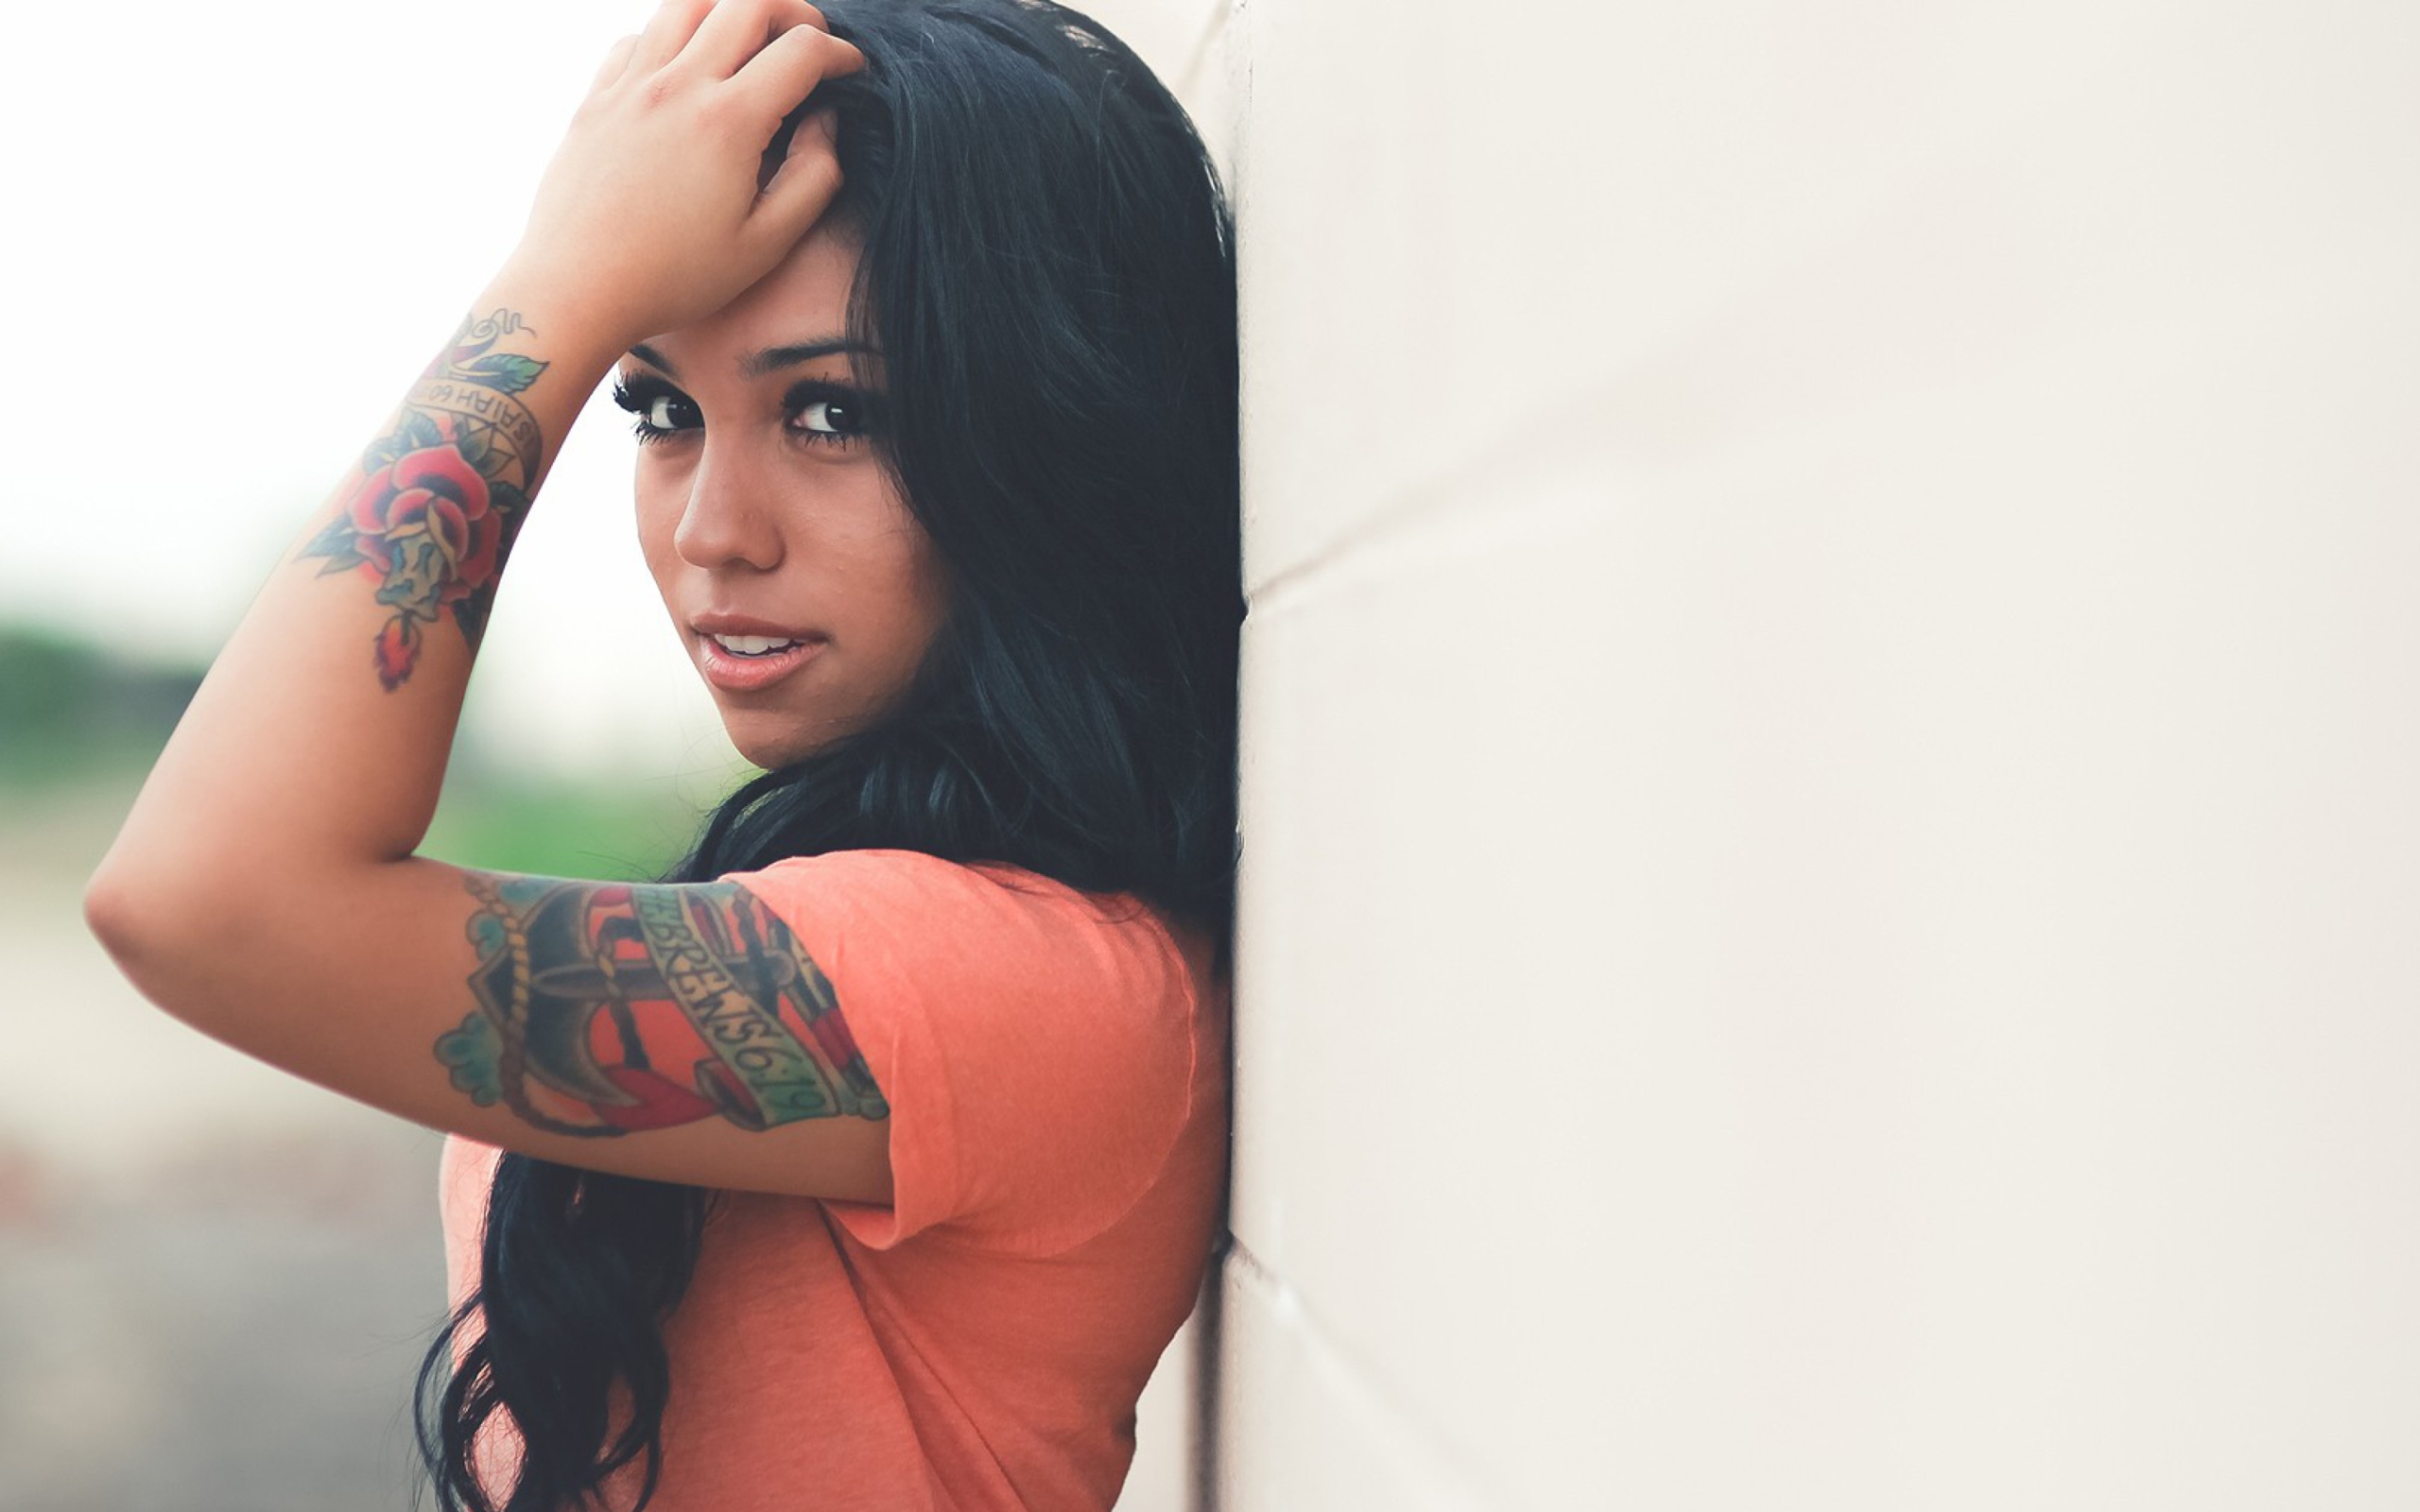 Beautiful Latin American Model With Tattoos screenshot #1 2560x1600